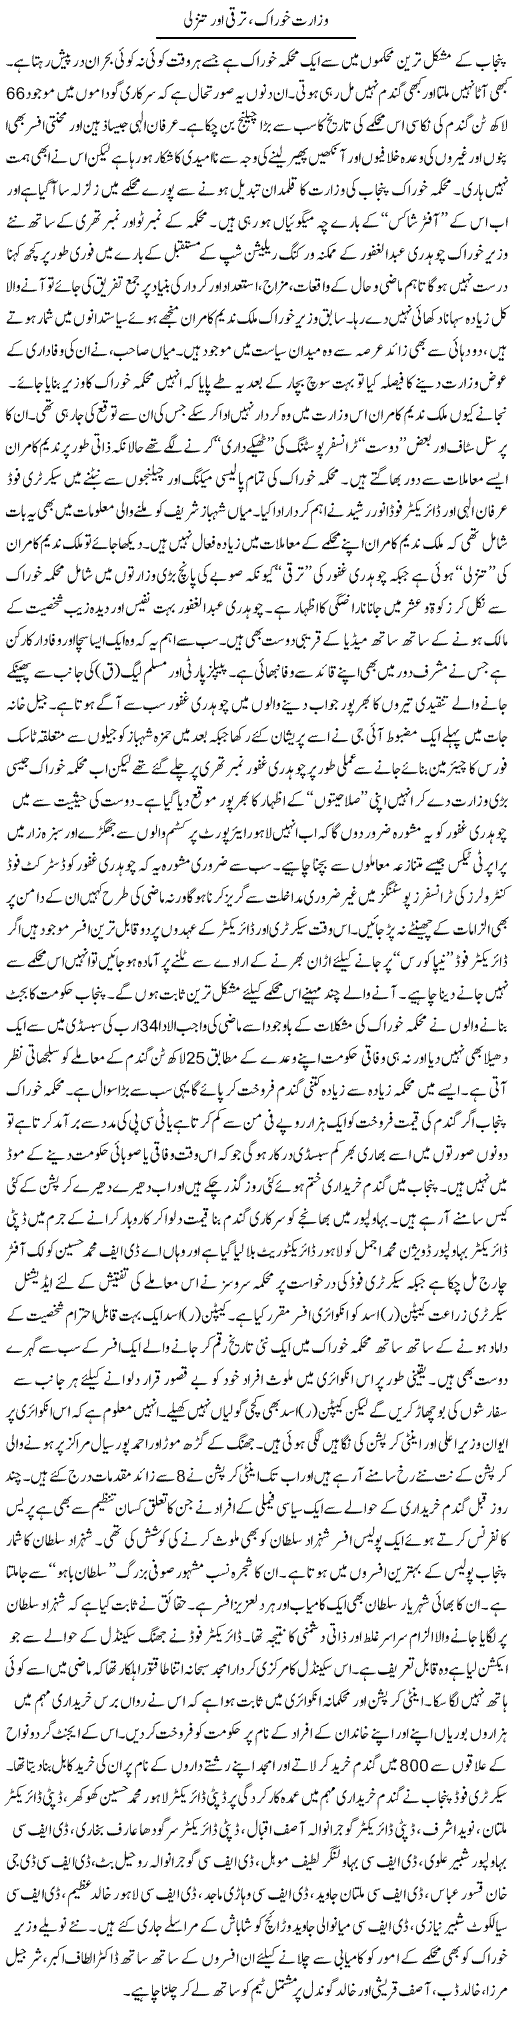 Wazarat Khorak Express Column Rizwan Asif 30 June 2010